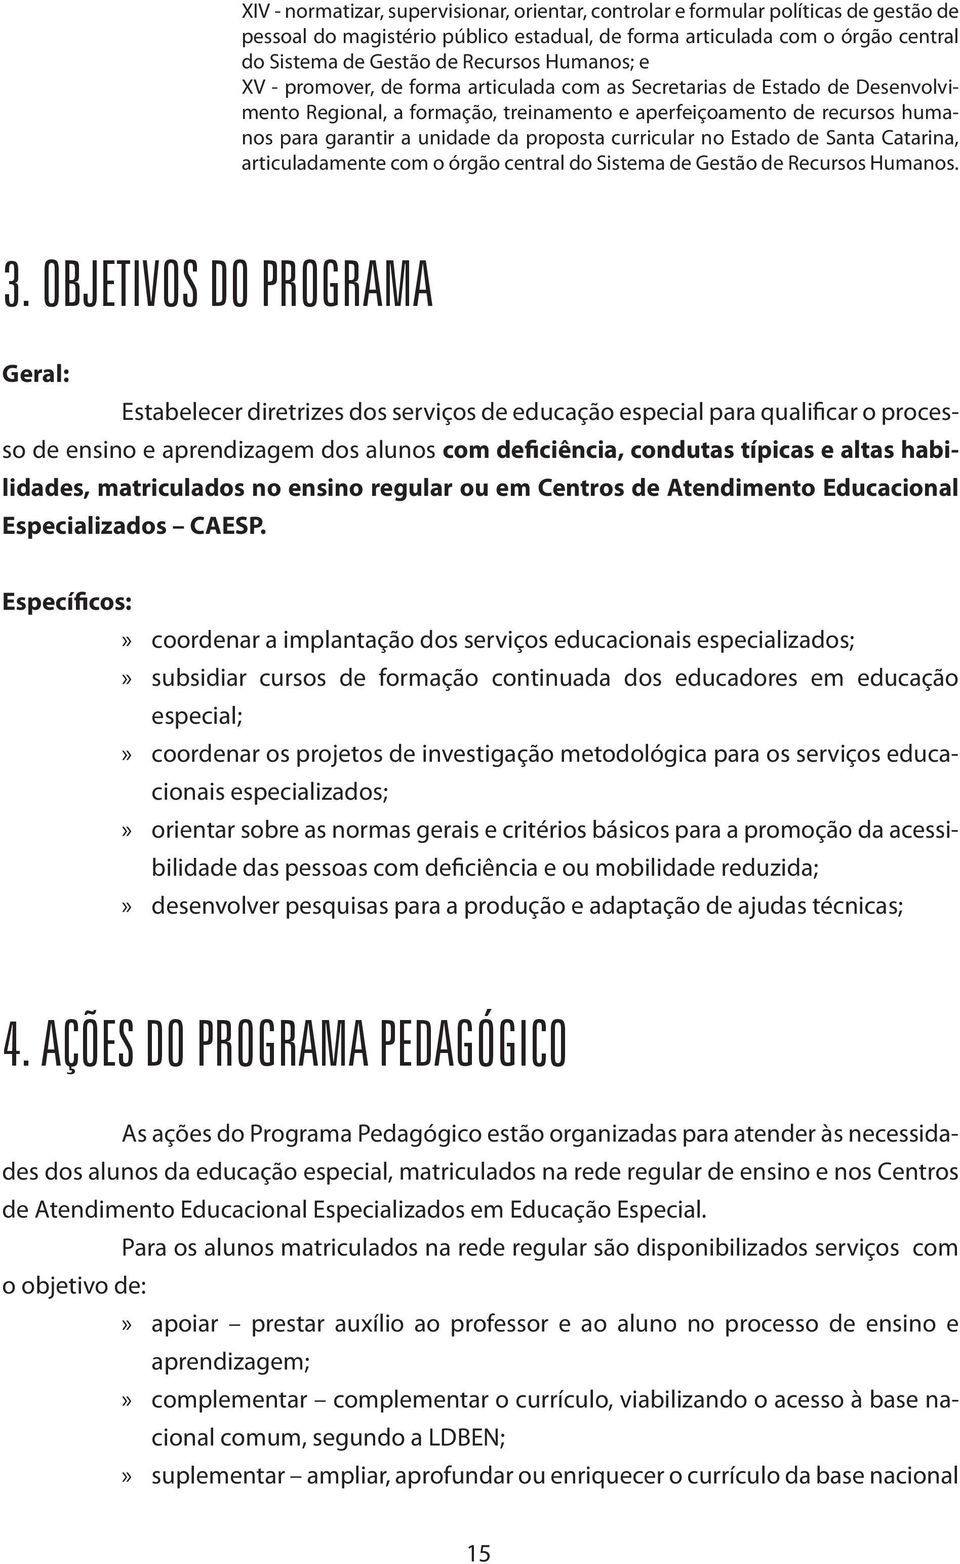 proposta curricular no Estado de Santa Catarina, articuladamente com o órgão central do Sistema de Gestão de Recursos Humanos. 3.